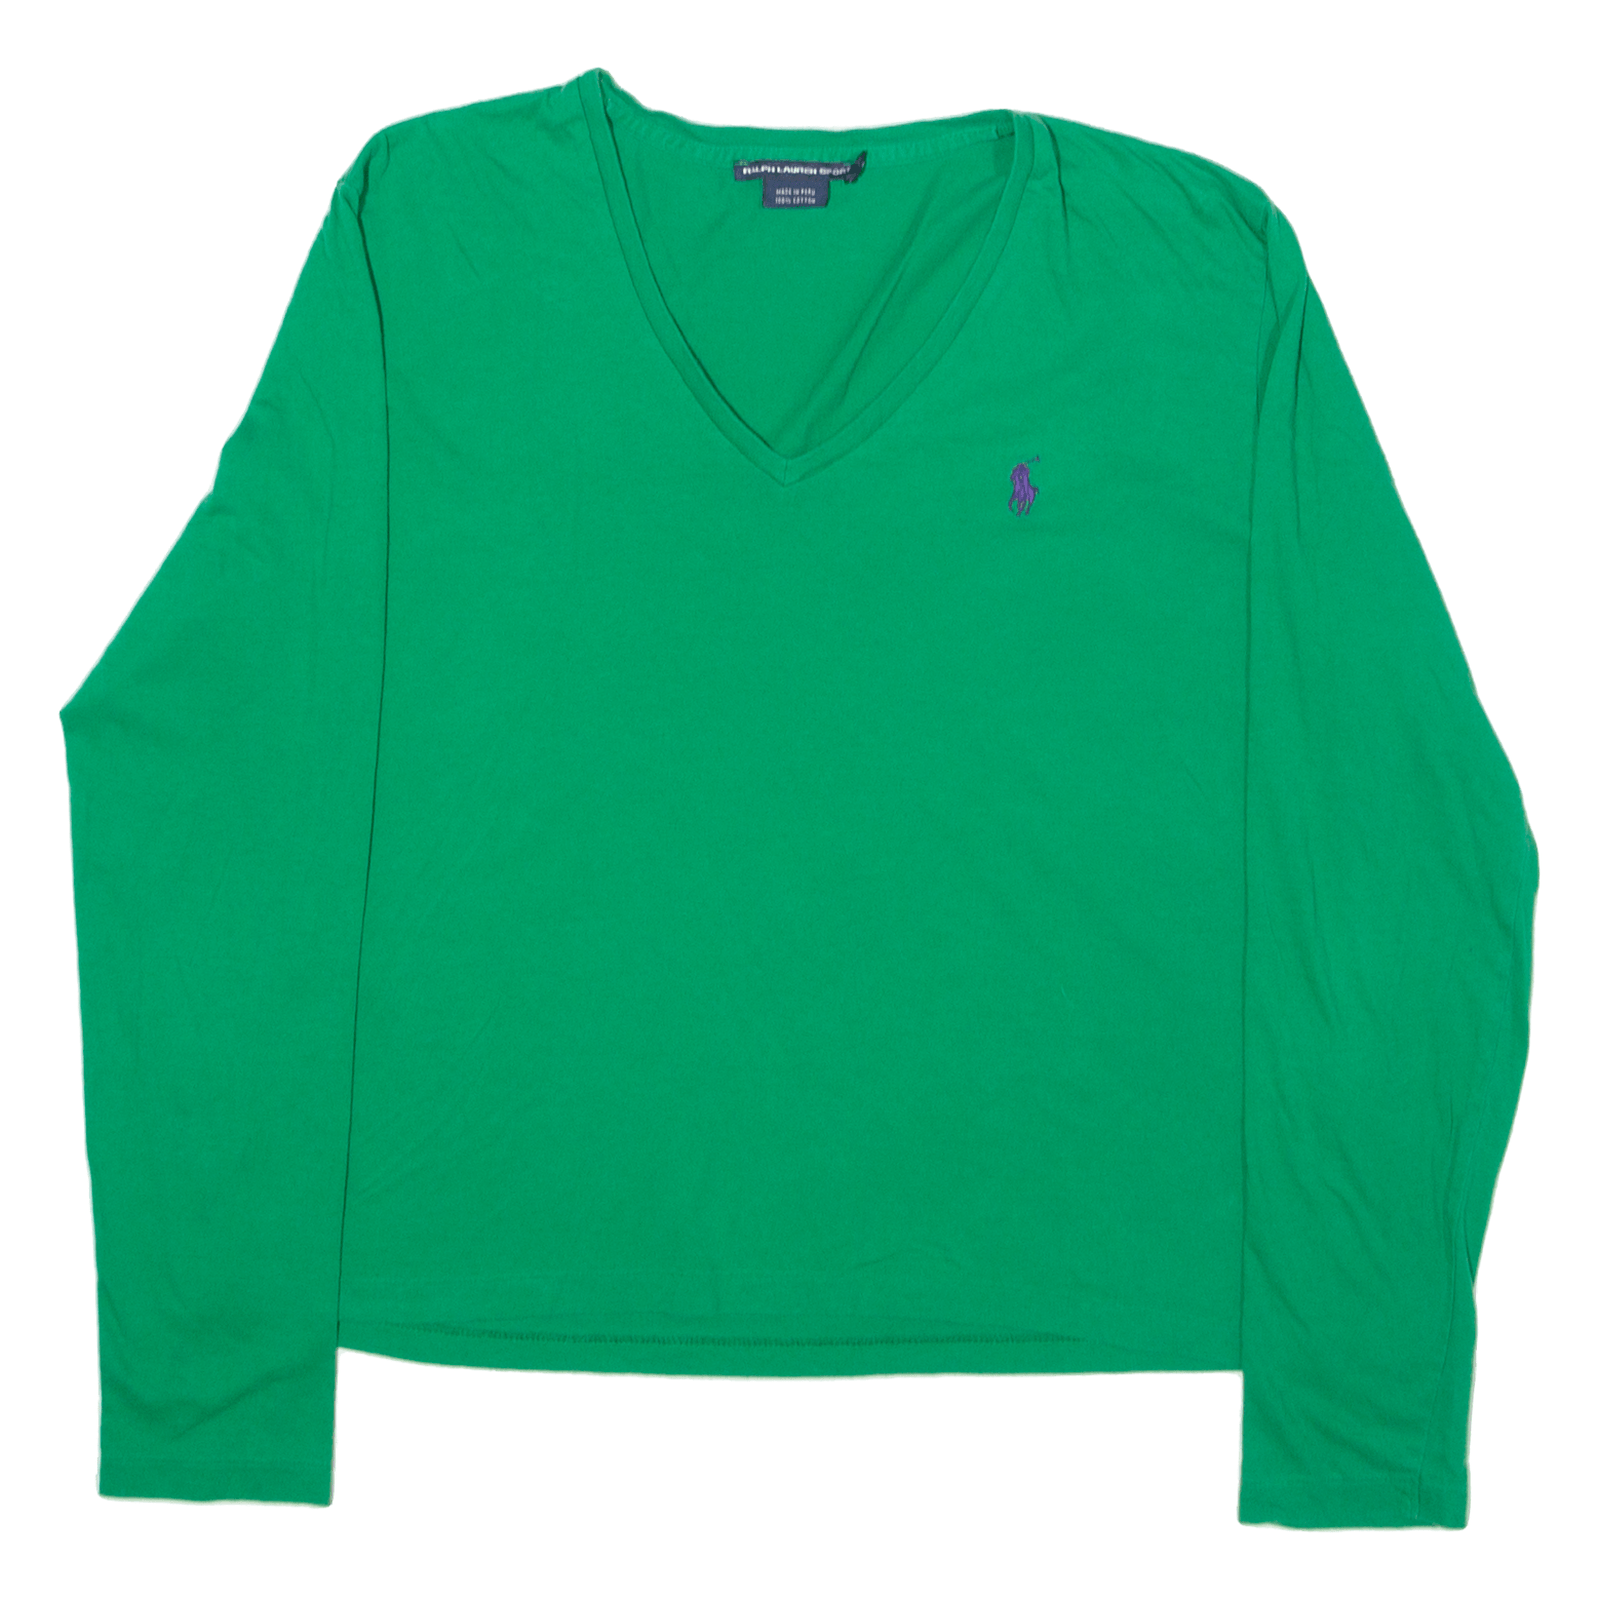 POLO SPORT RALPH LAUREN Womens T-Shirt Green Long Sleeve V-Neck XL